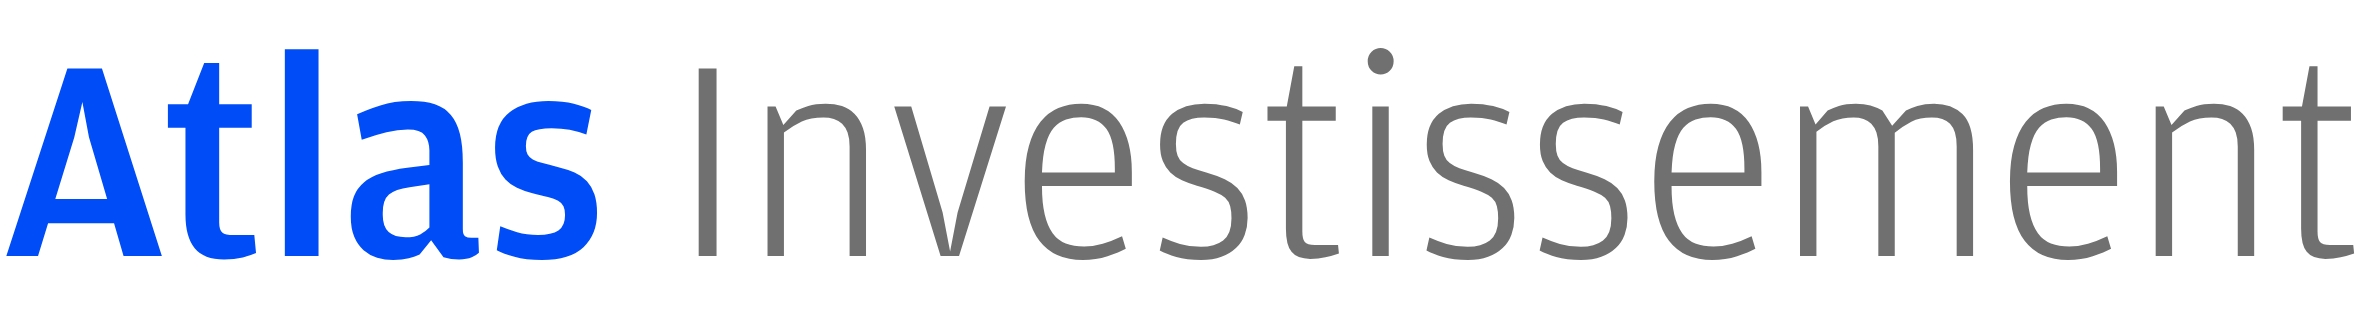 Atlas Investissement logo.jpg